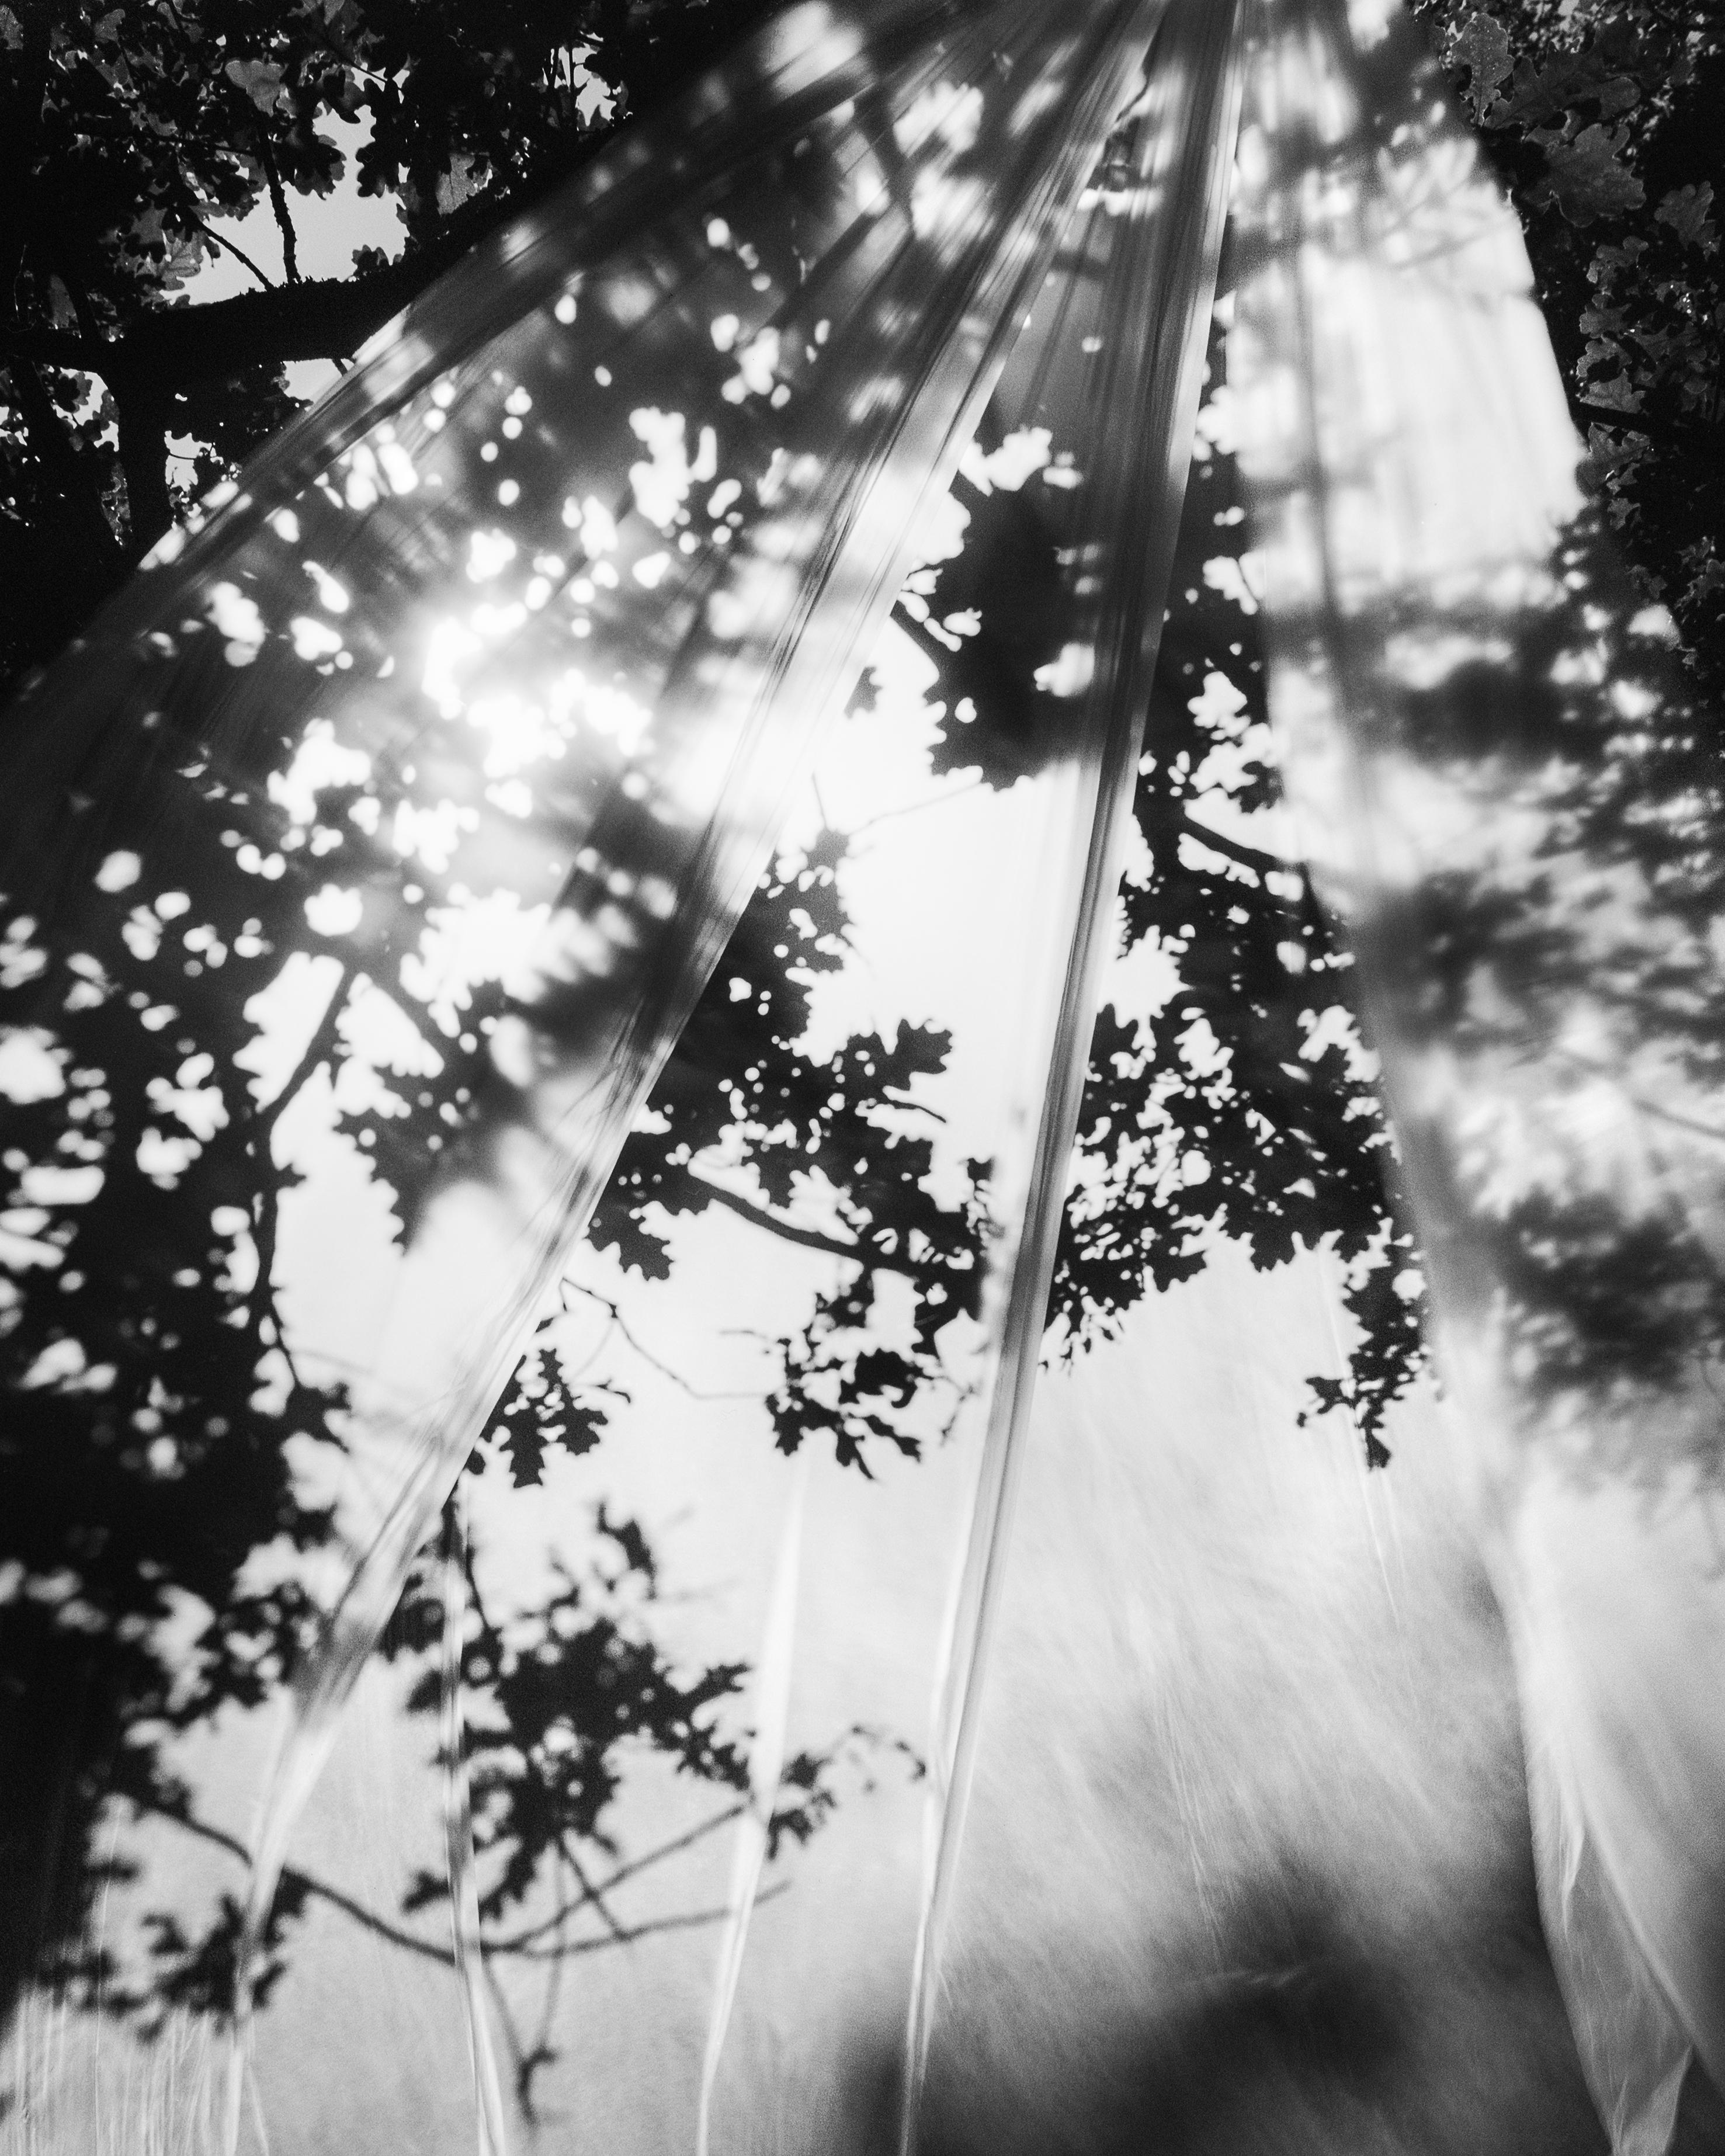 Daydream - Schwarz-Weiß-Landschaftsfotografie Limitierte Auflage von 20 Stück